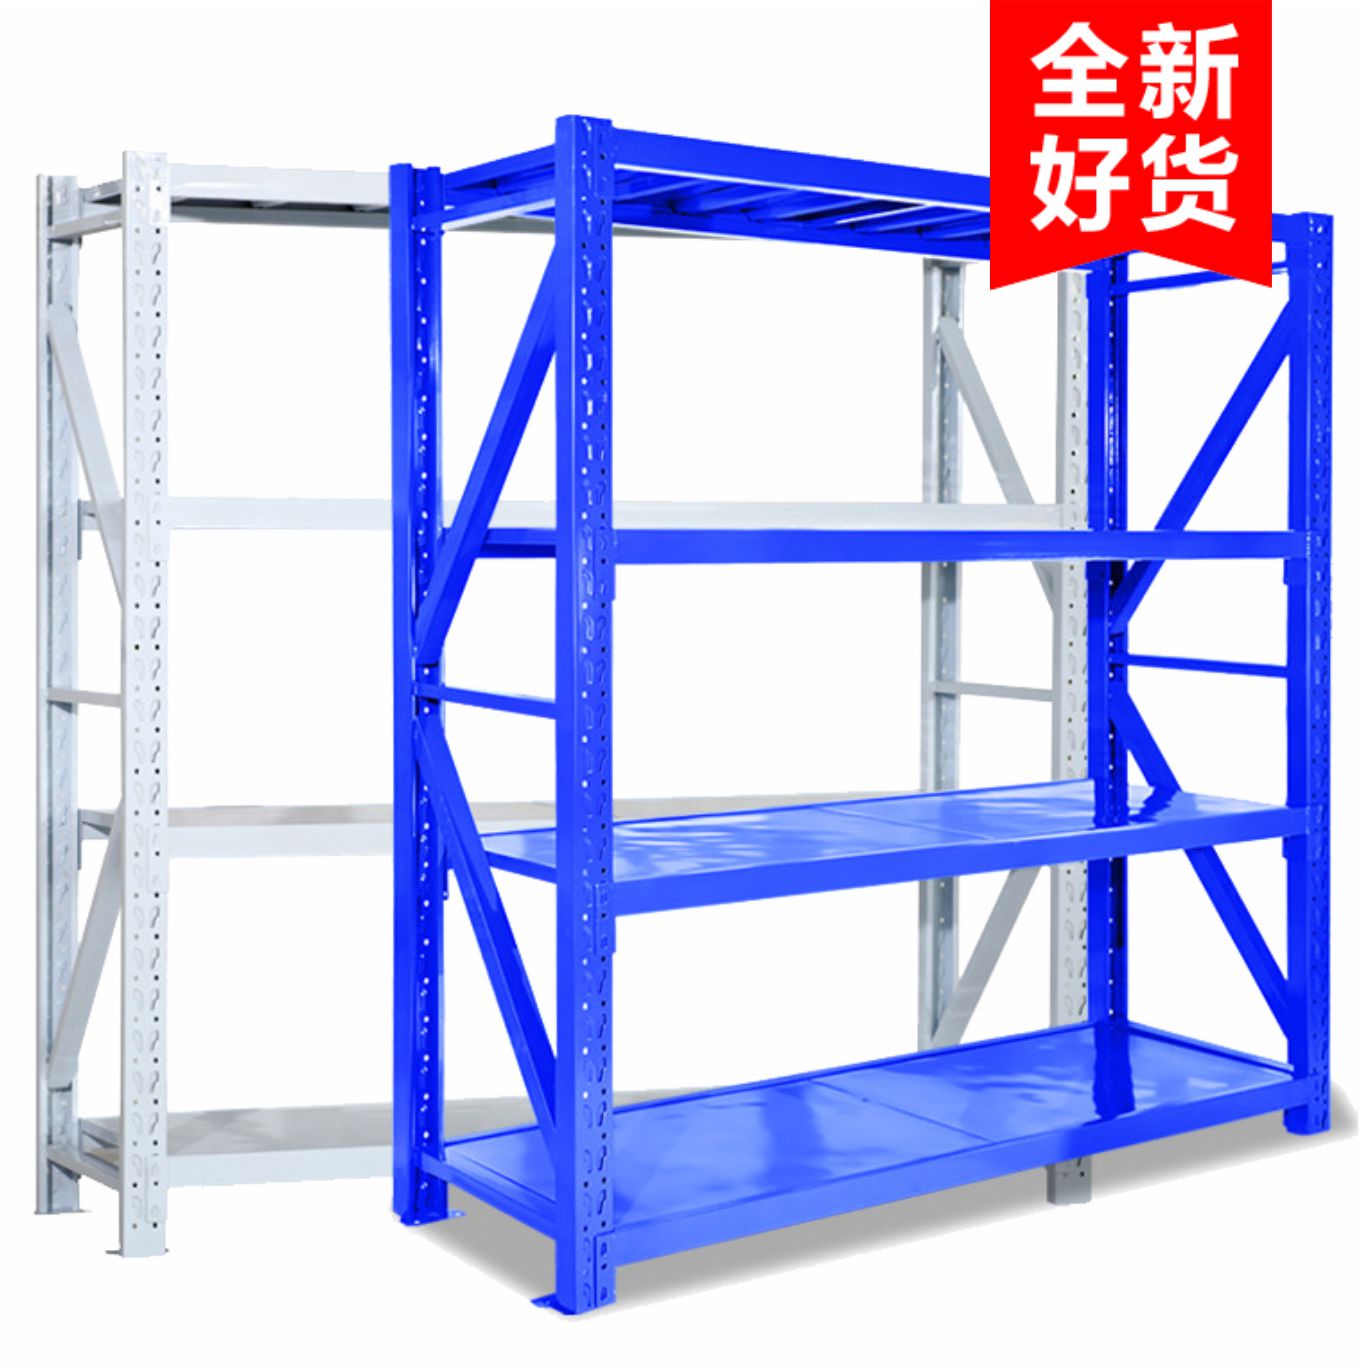 轻中型层板式置物架 仓储货架 生产厂家定制设计安装 隔板式铁架子